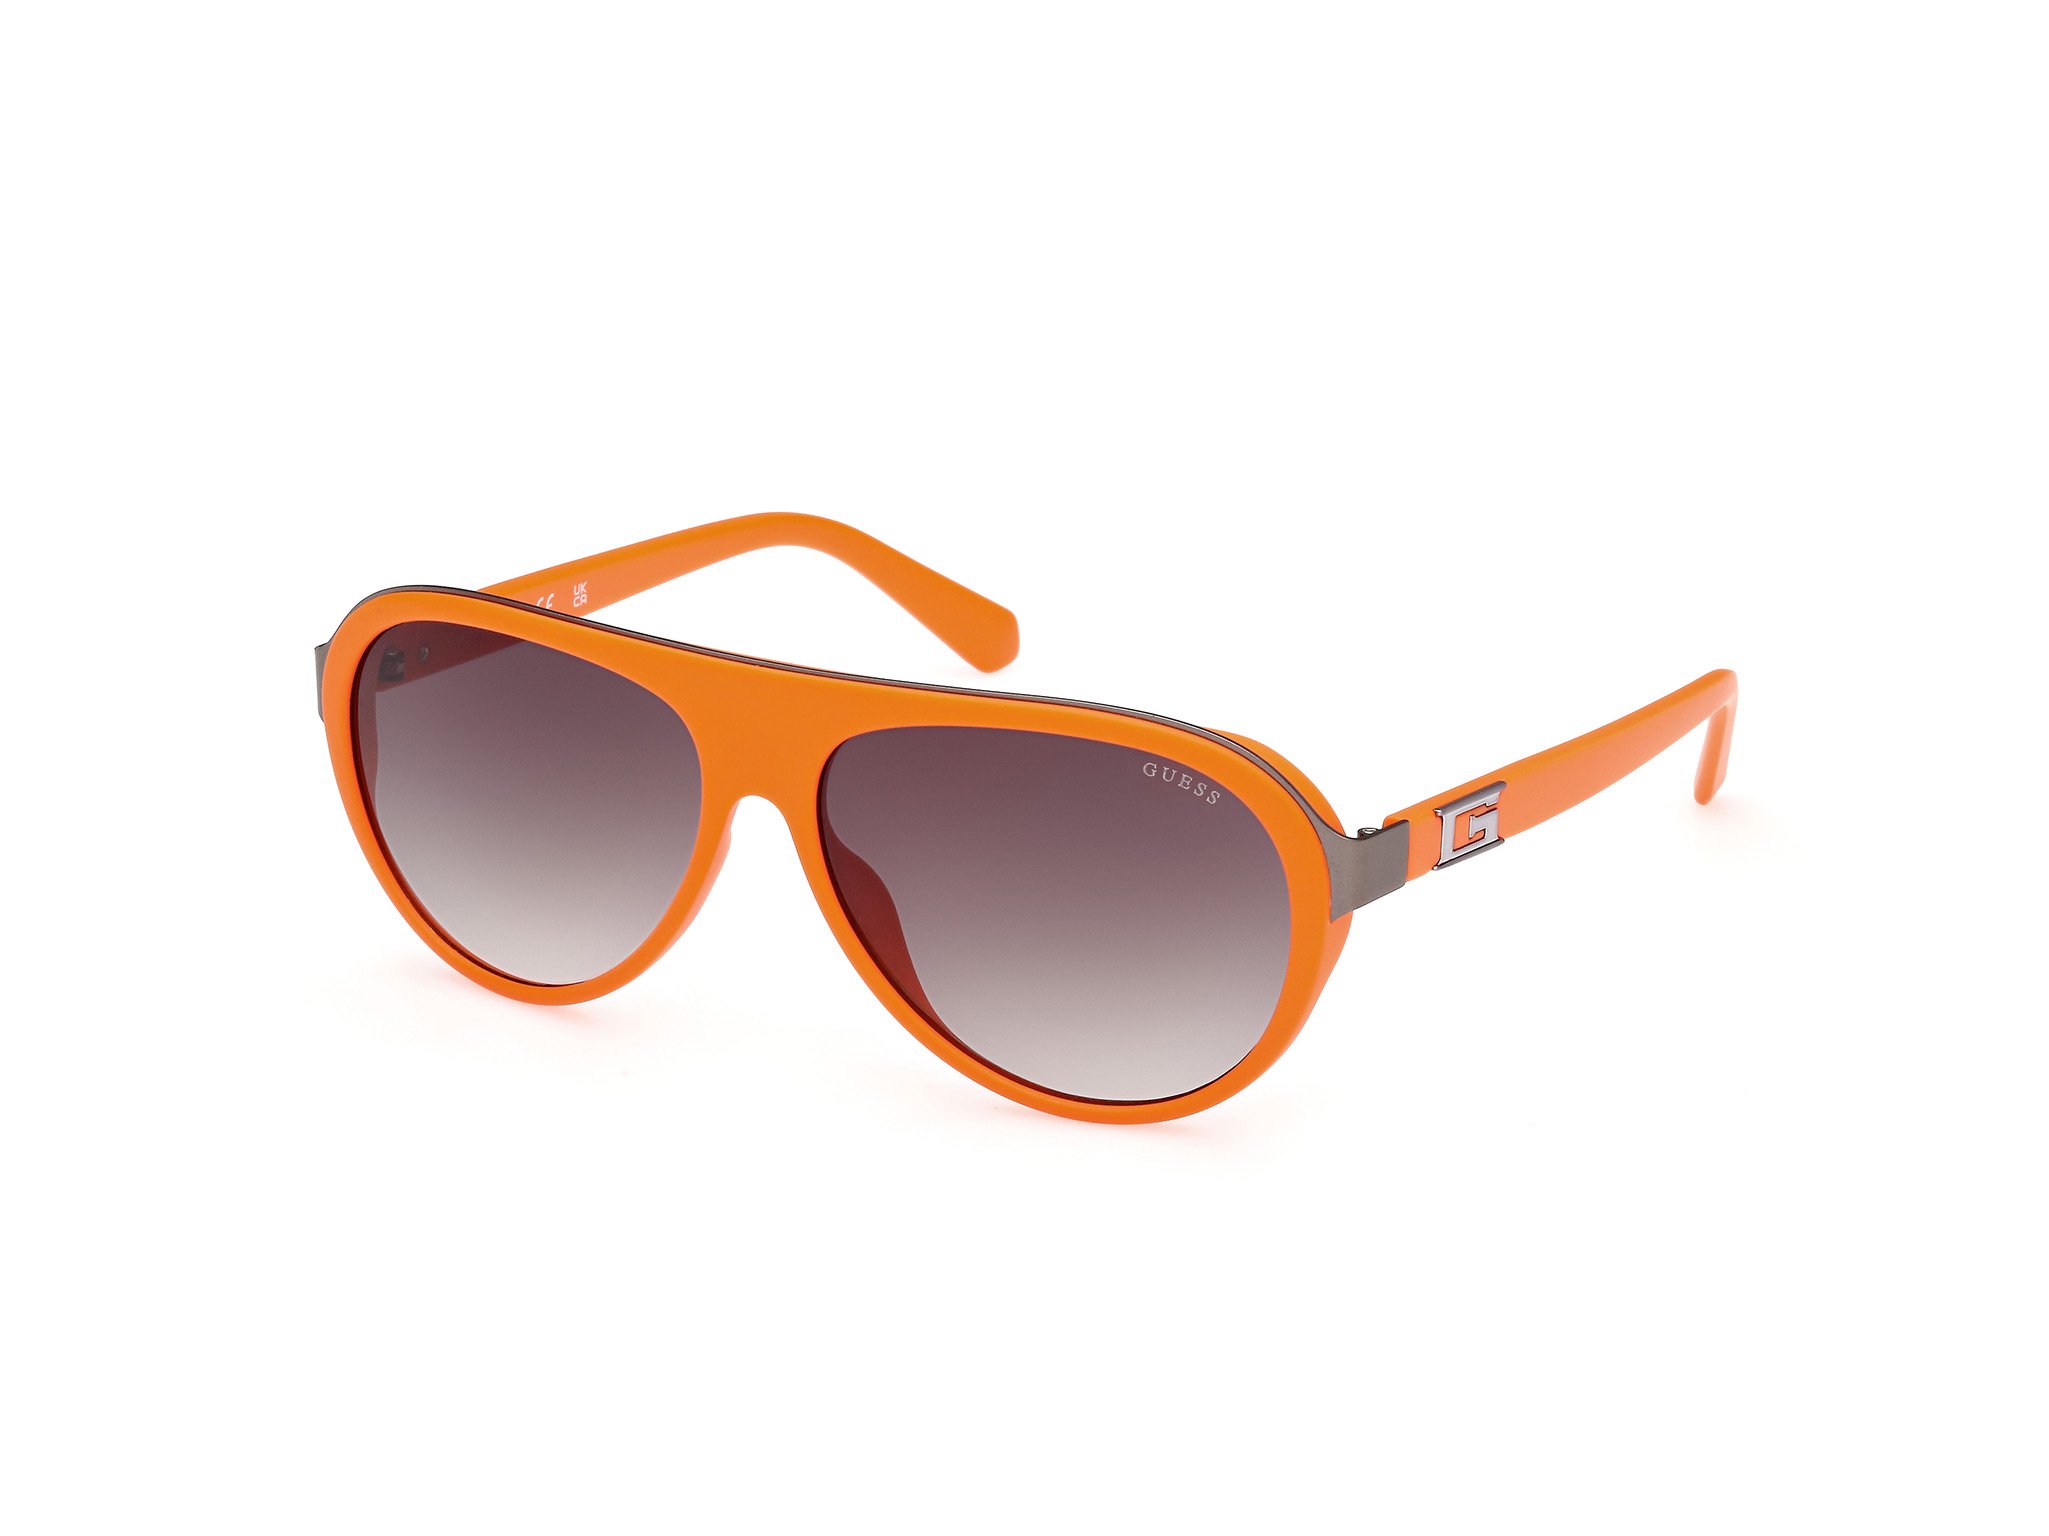 Das Bild zeigt die Sonnenbrille GU00125 43P von der Marke Guess in Orange.